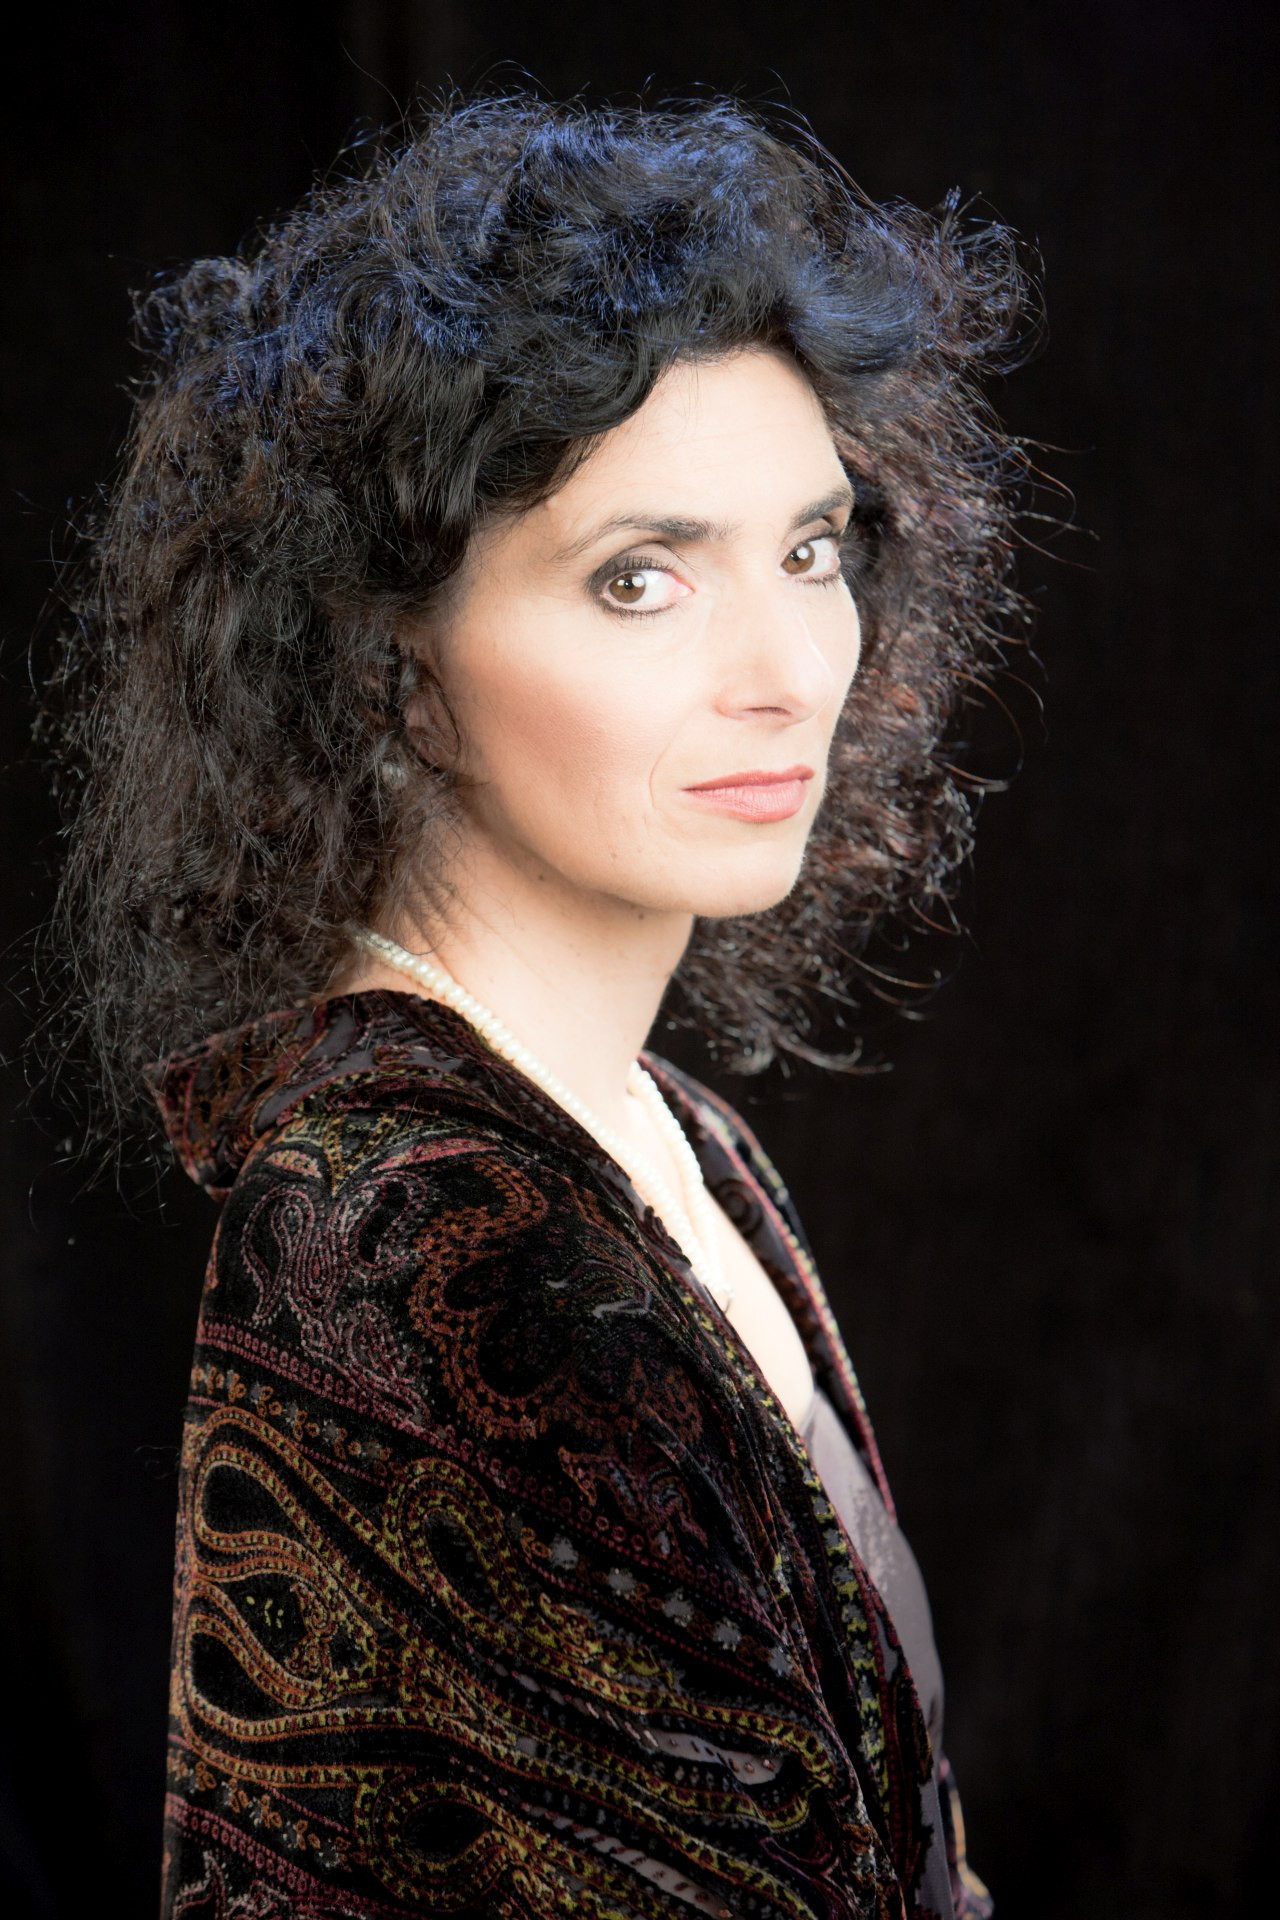 Die tschechische Sopranistin Irena Troupová spielt am 11. Oktober, 18.30 Uhr gemeinsam mit der Pianistin Petra Matějová im Kaisersaal des Stadtmuseums von Ústí nad Labem.